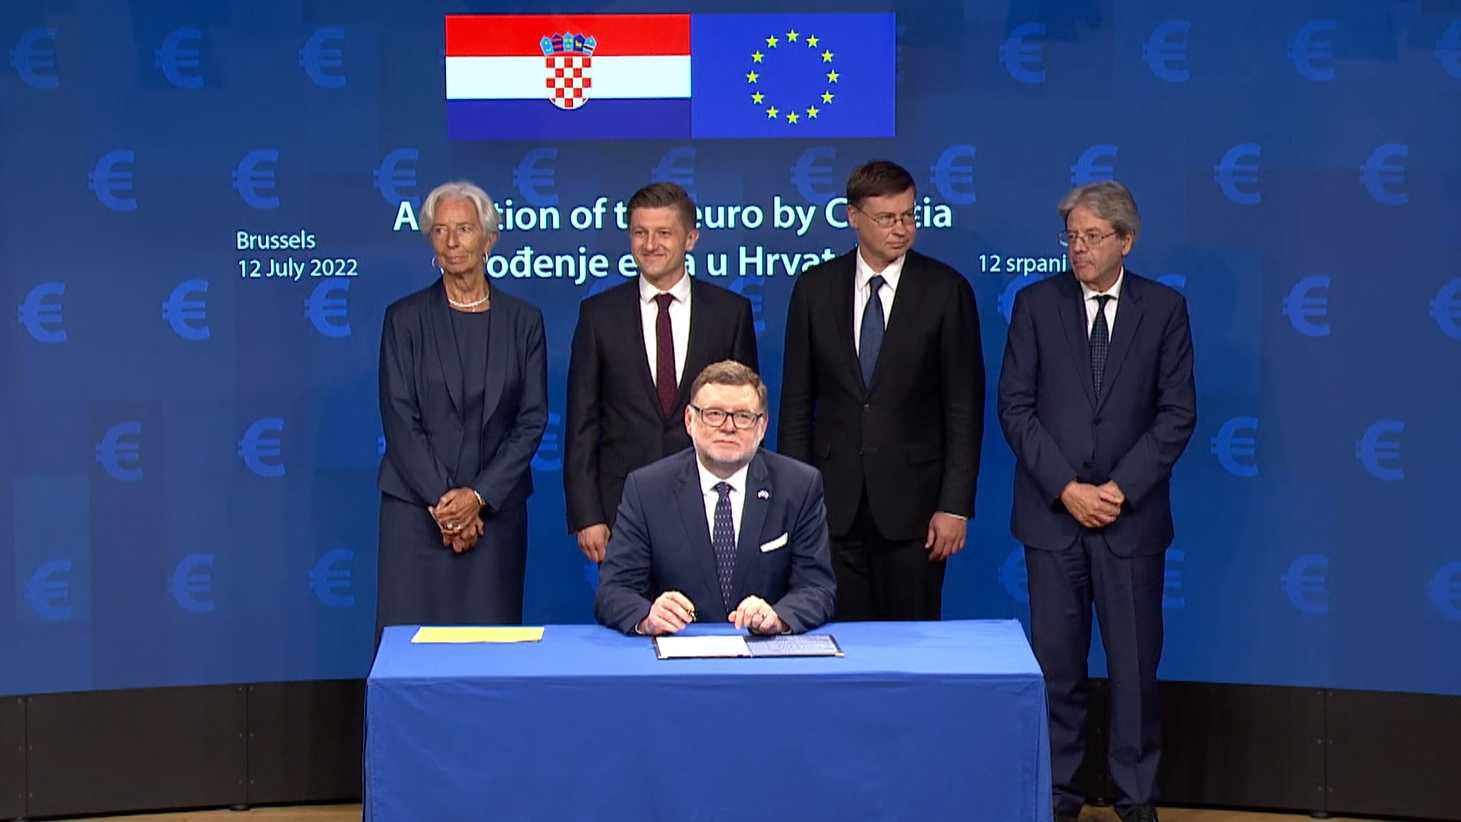 Hırvatistan resmen Euro Bölgesine katıldı